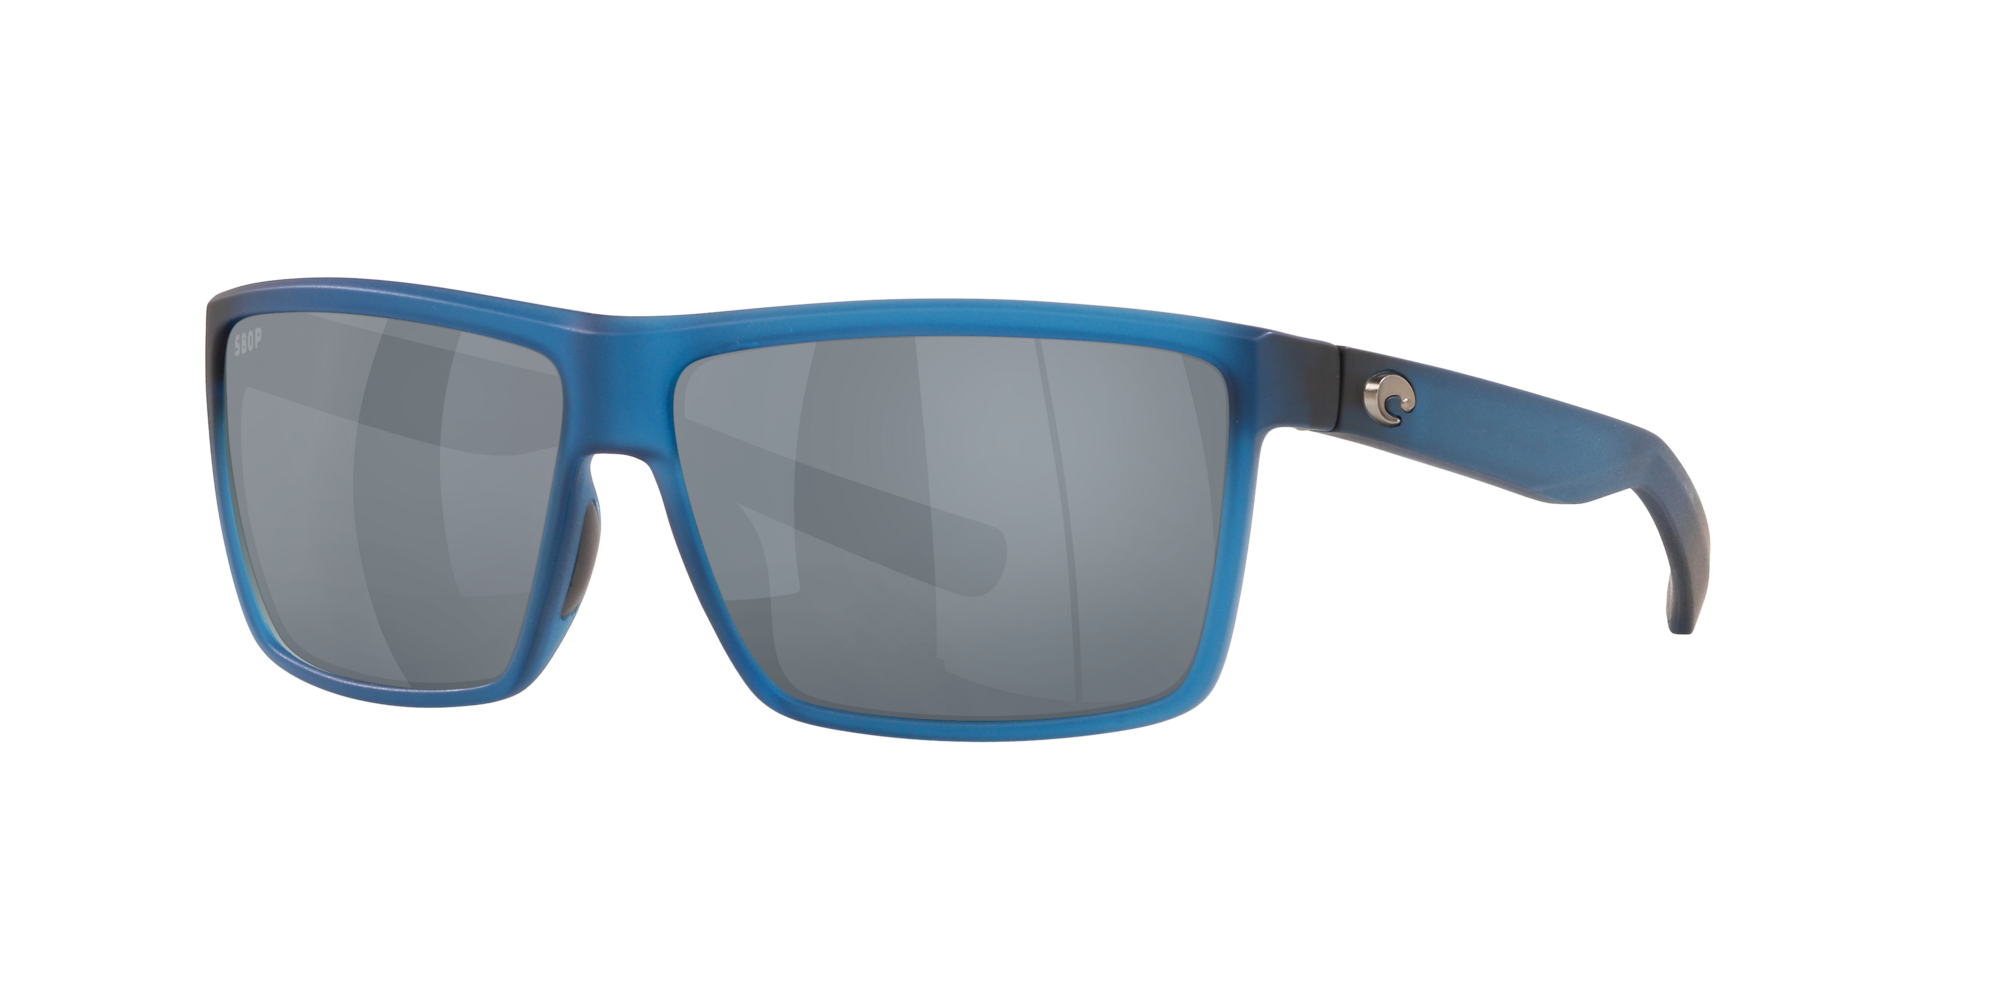 Rinconcito Polarized Sunglasses | Costa 